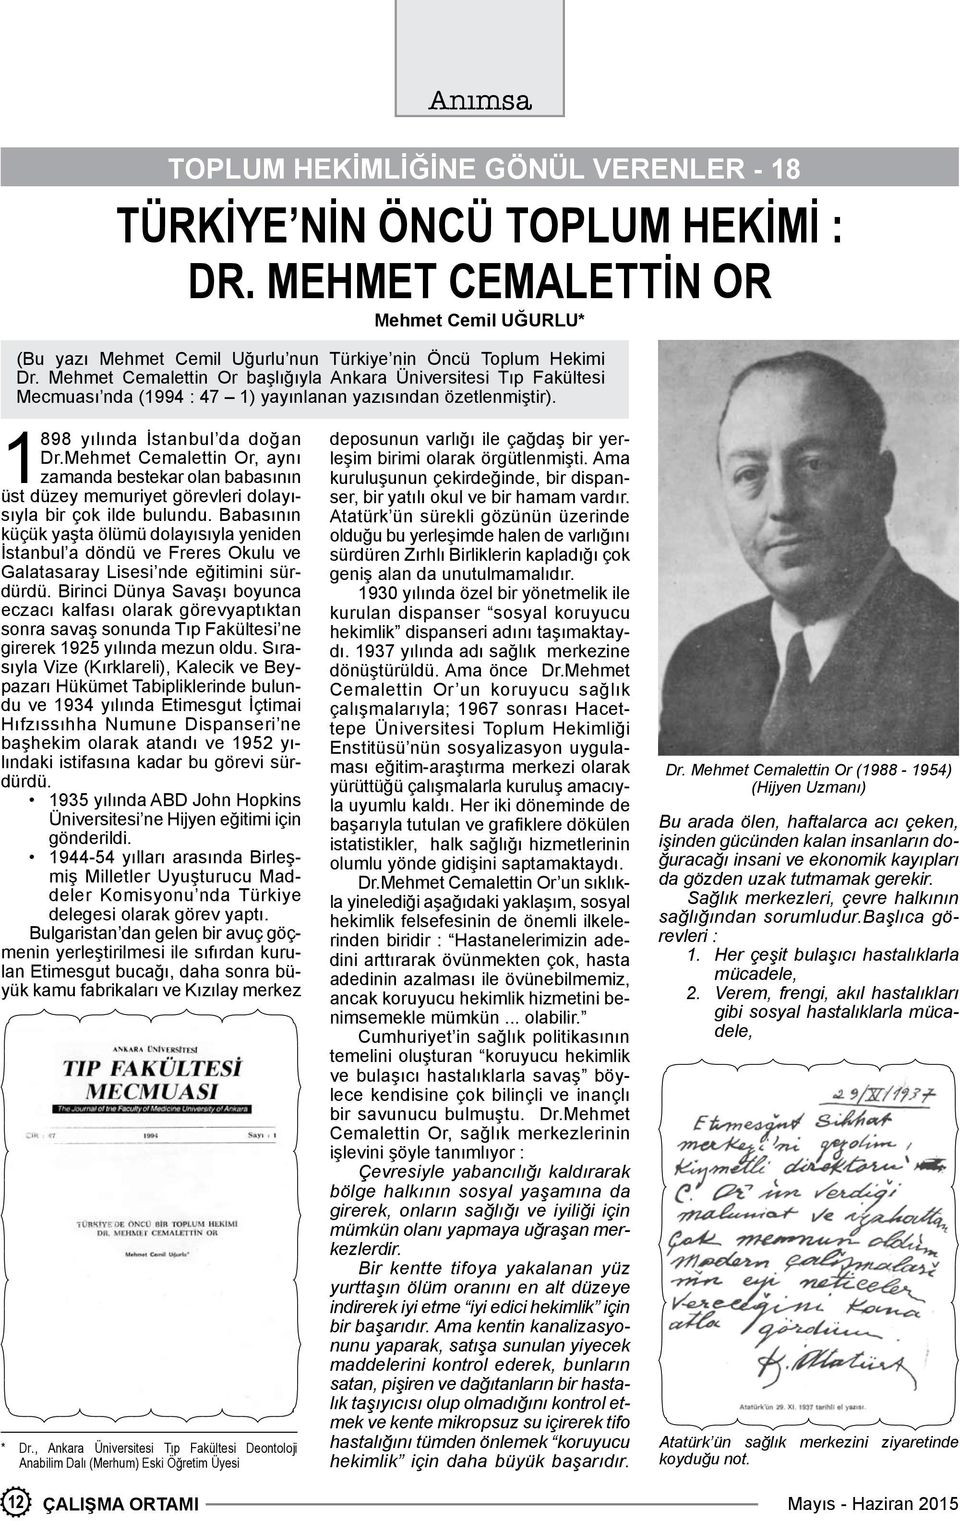 Mehmet Cemaettin Or, aynı zamanda bestekar oan babasının üst düzey memuriyet göreveri doayısıya bir çok ide buundu.